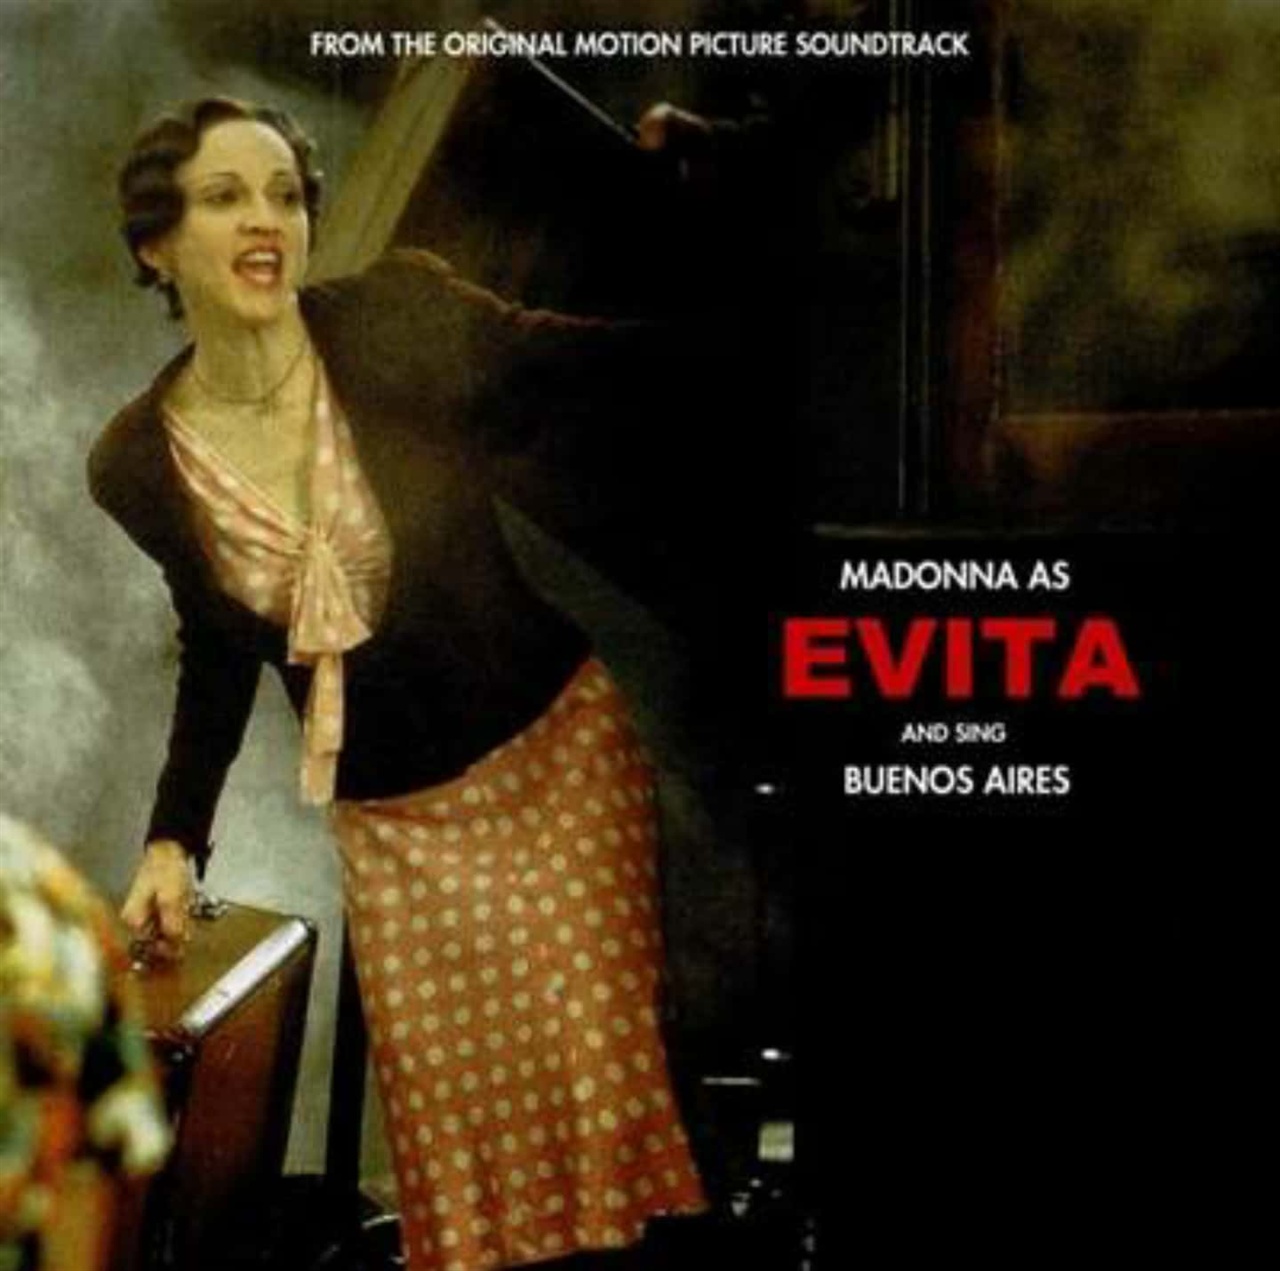 영화 '에비타'에 삽입된 마돈나가 부른 '부에노스 아이레스'의 커버사진이다.